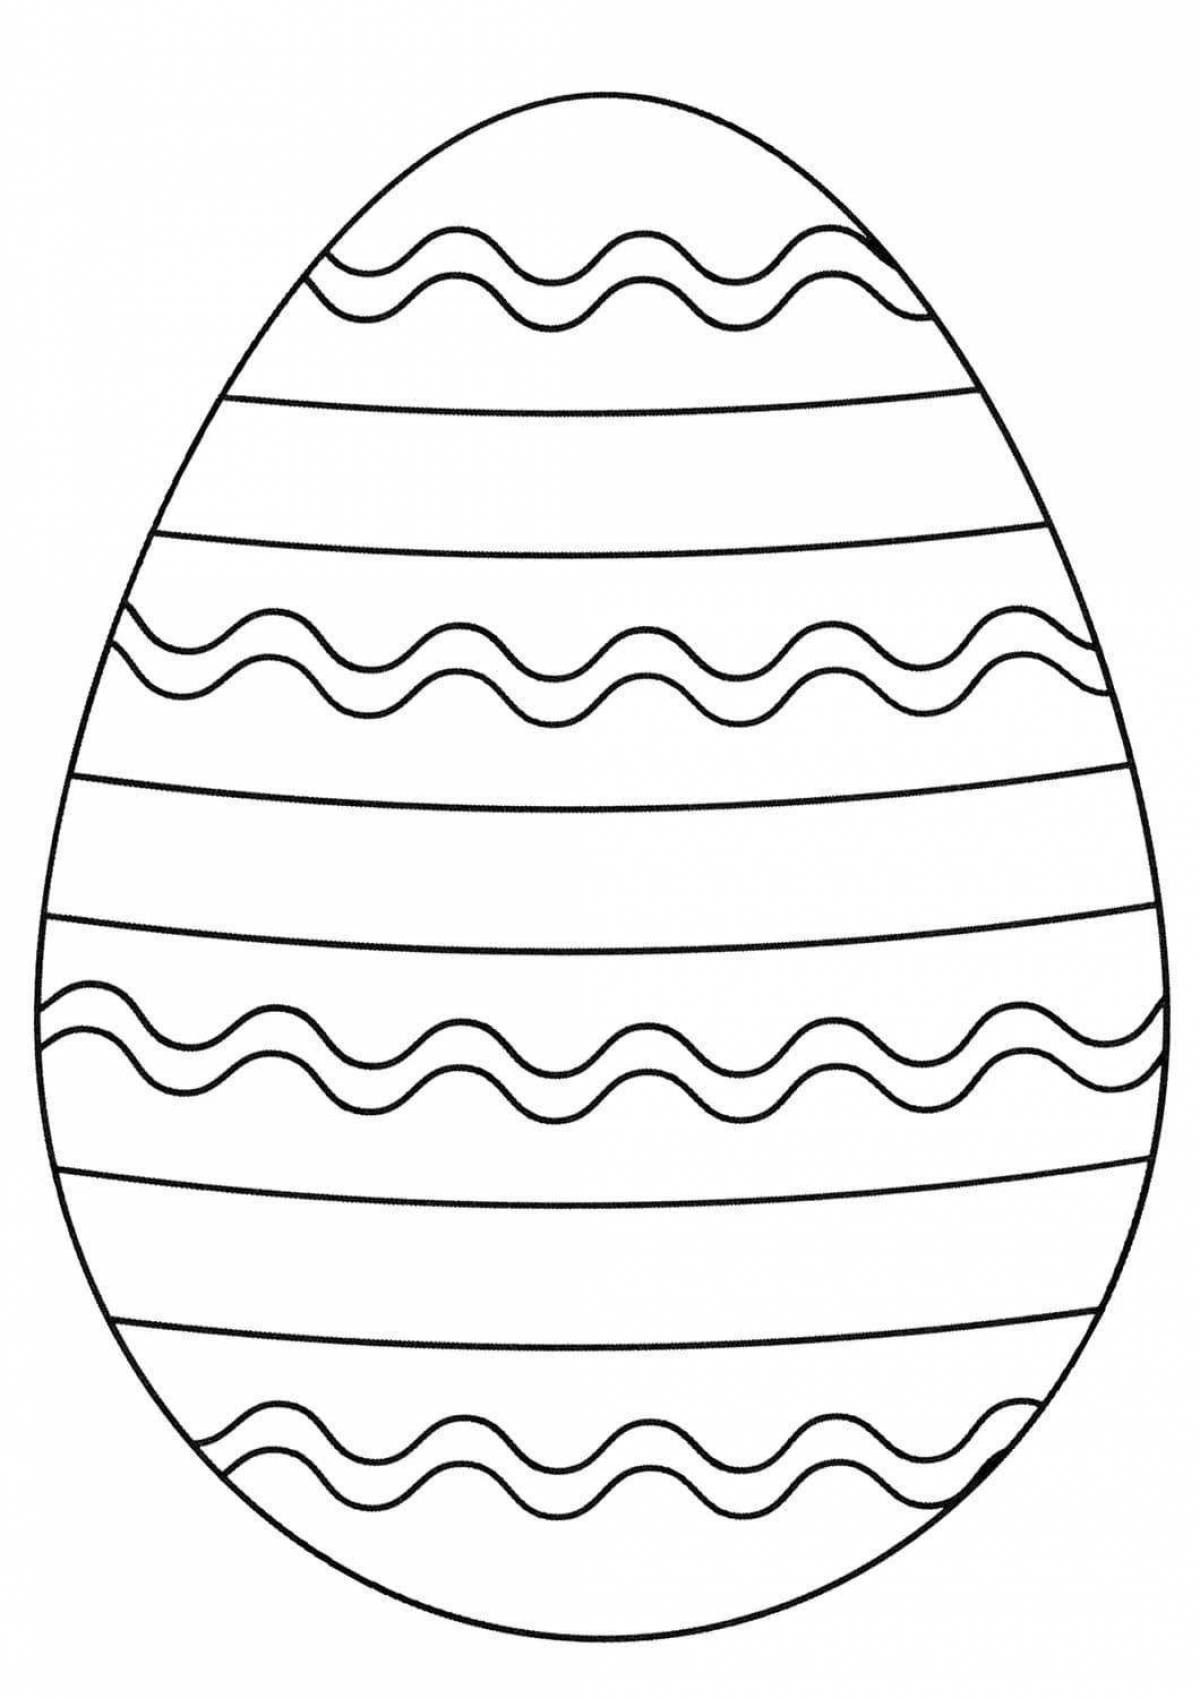 Egg for kids #9